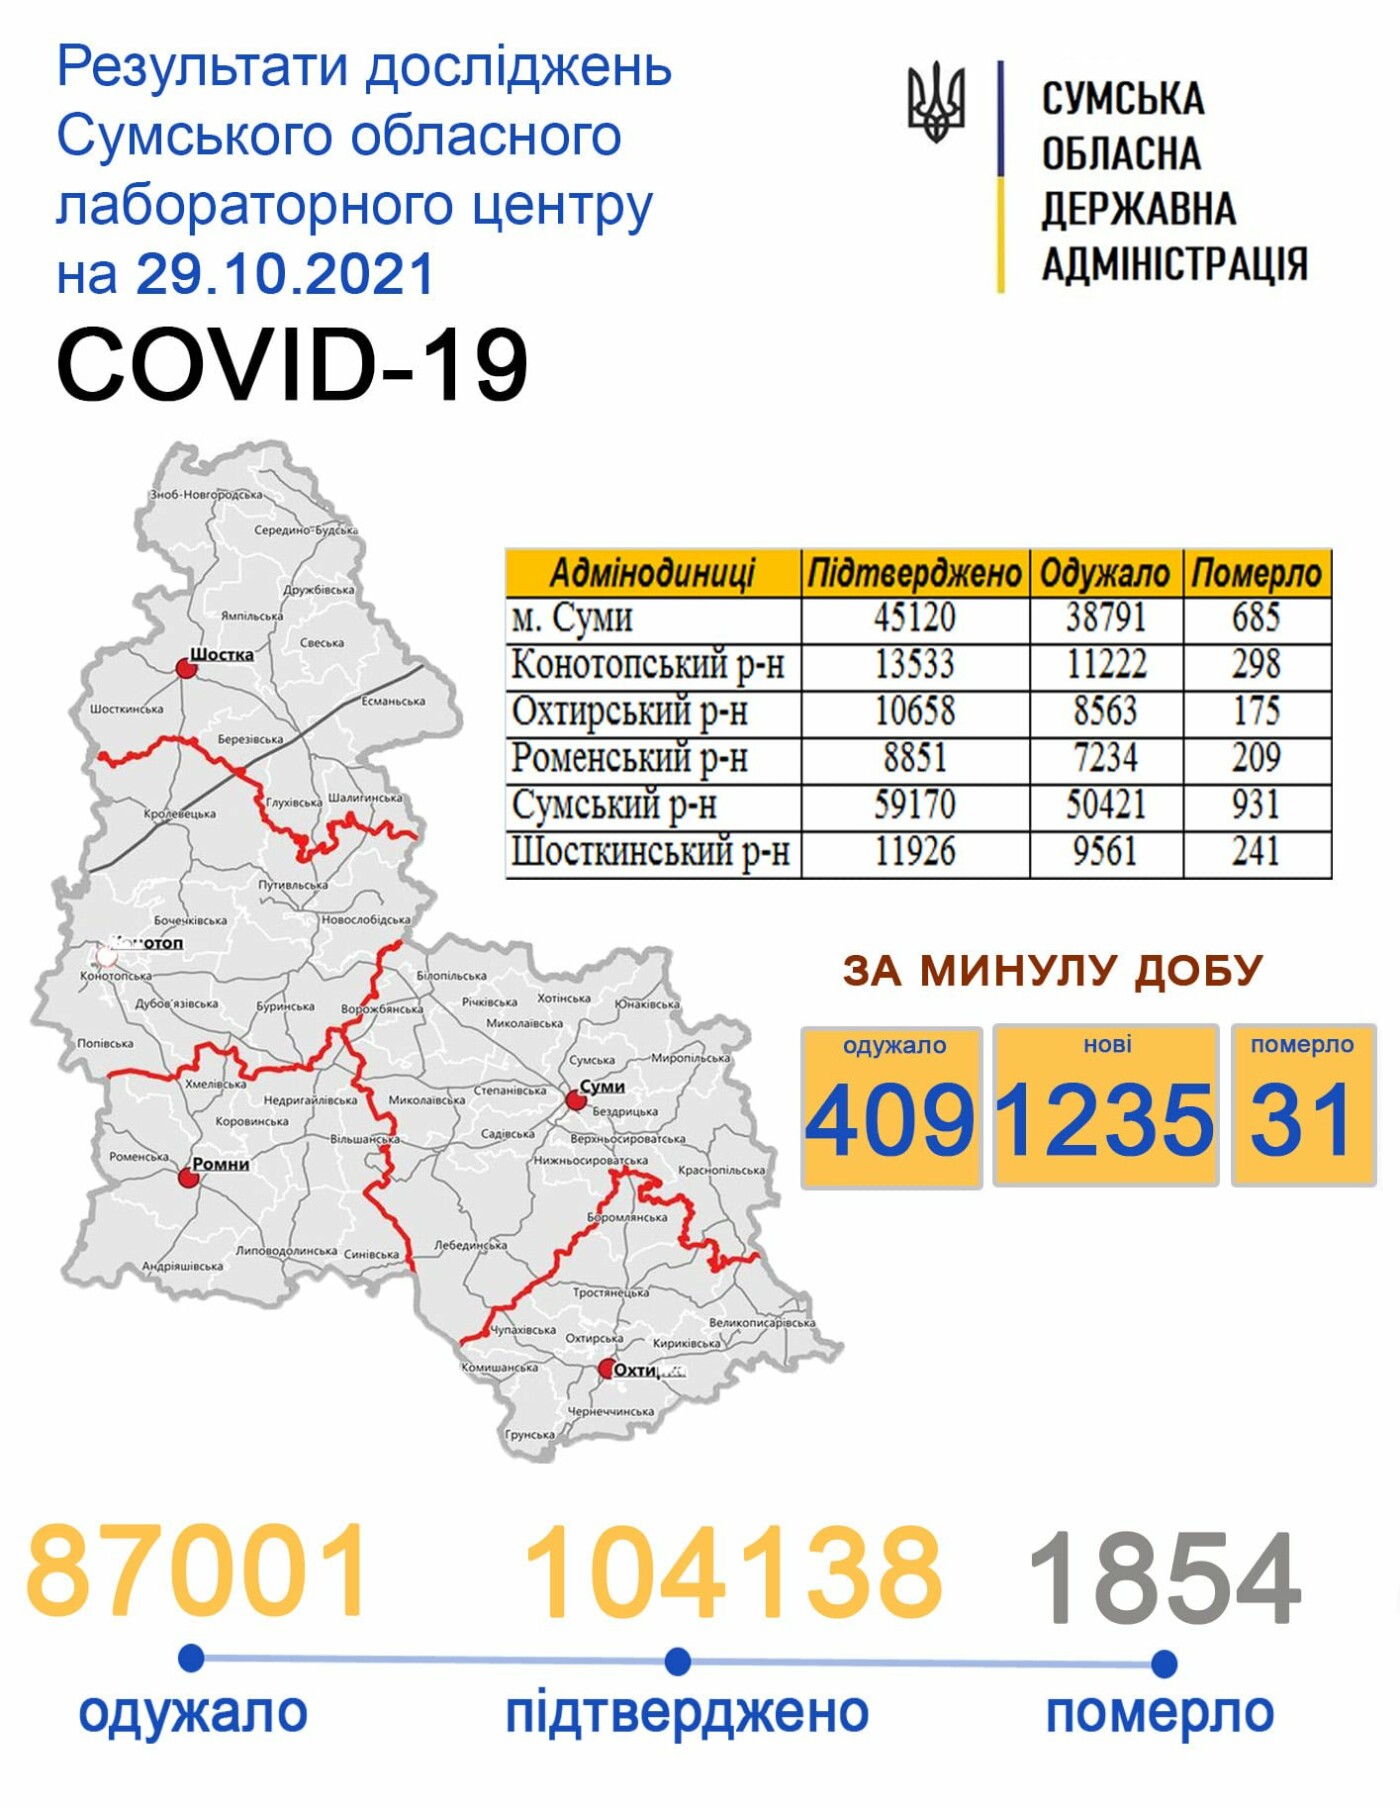    covid-19  1235   